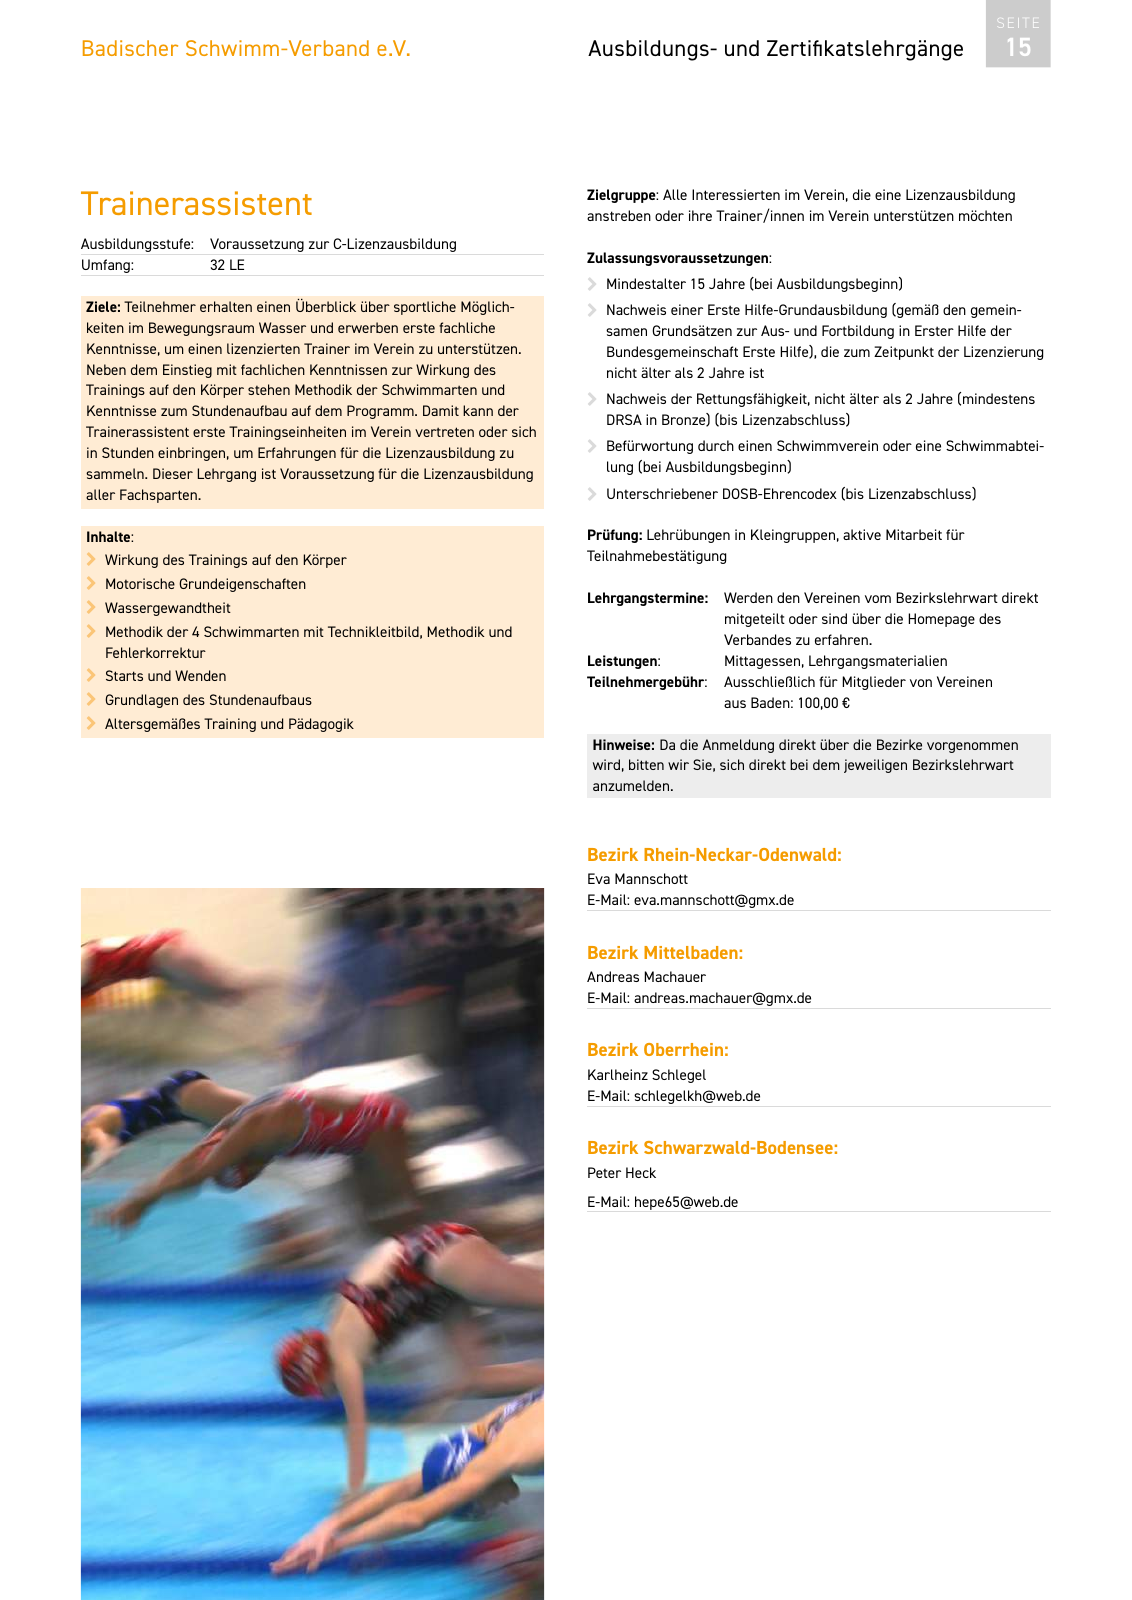 Vorschau Lehrgänge 2020 // Akademie des Schwimmsports Seite 15